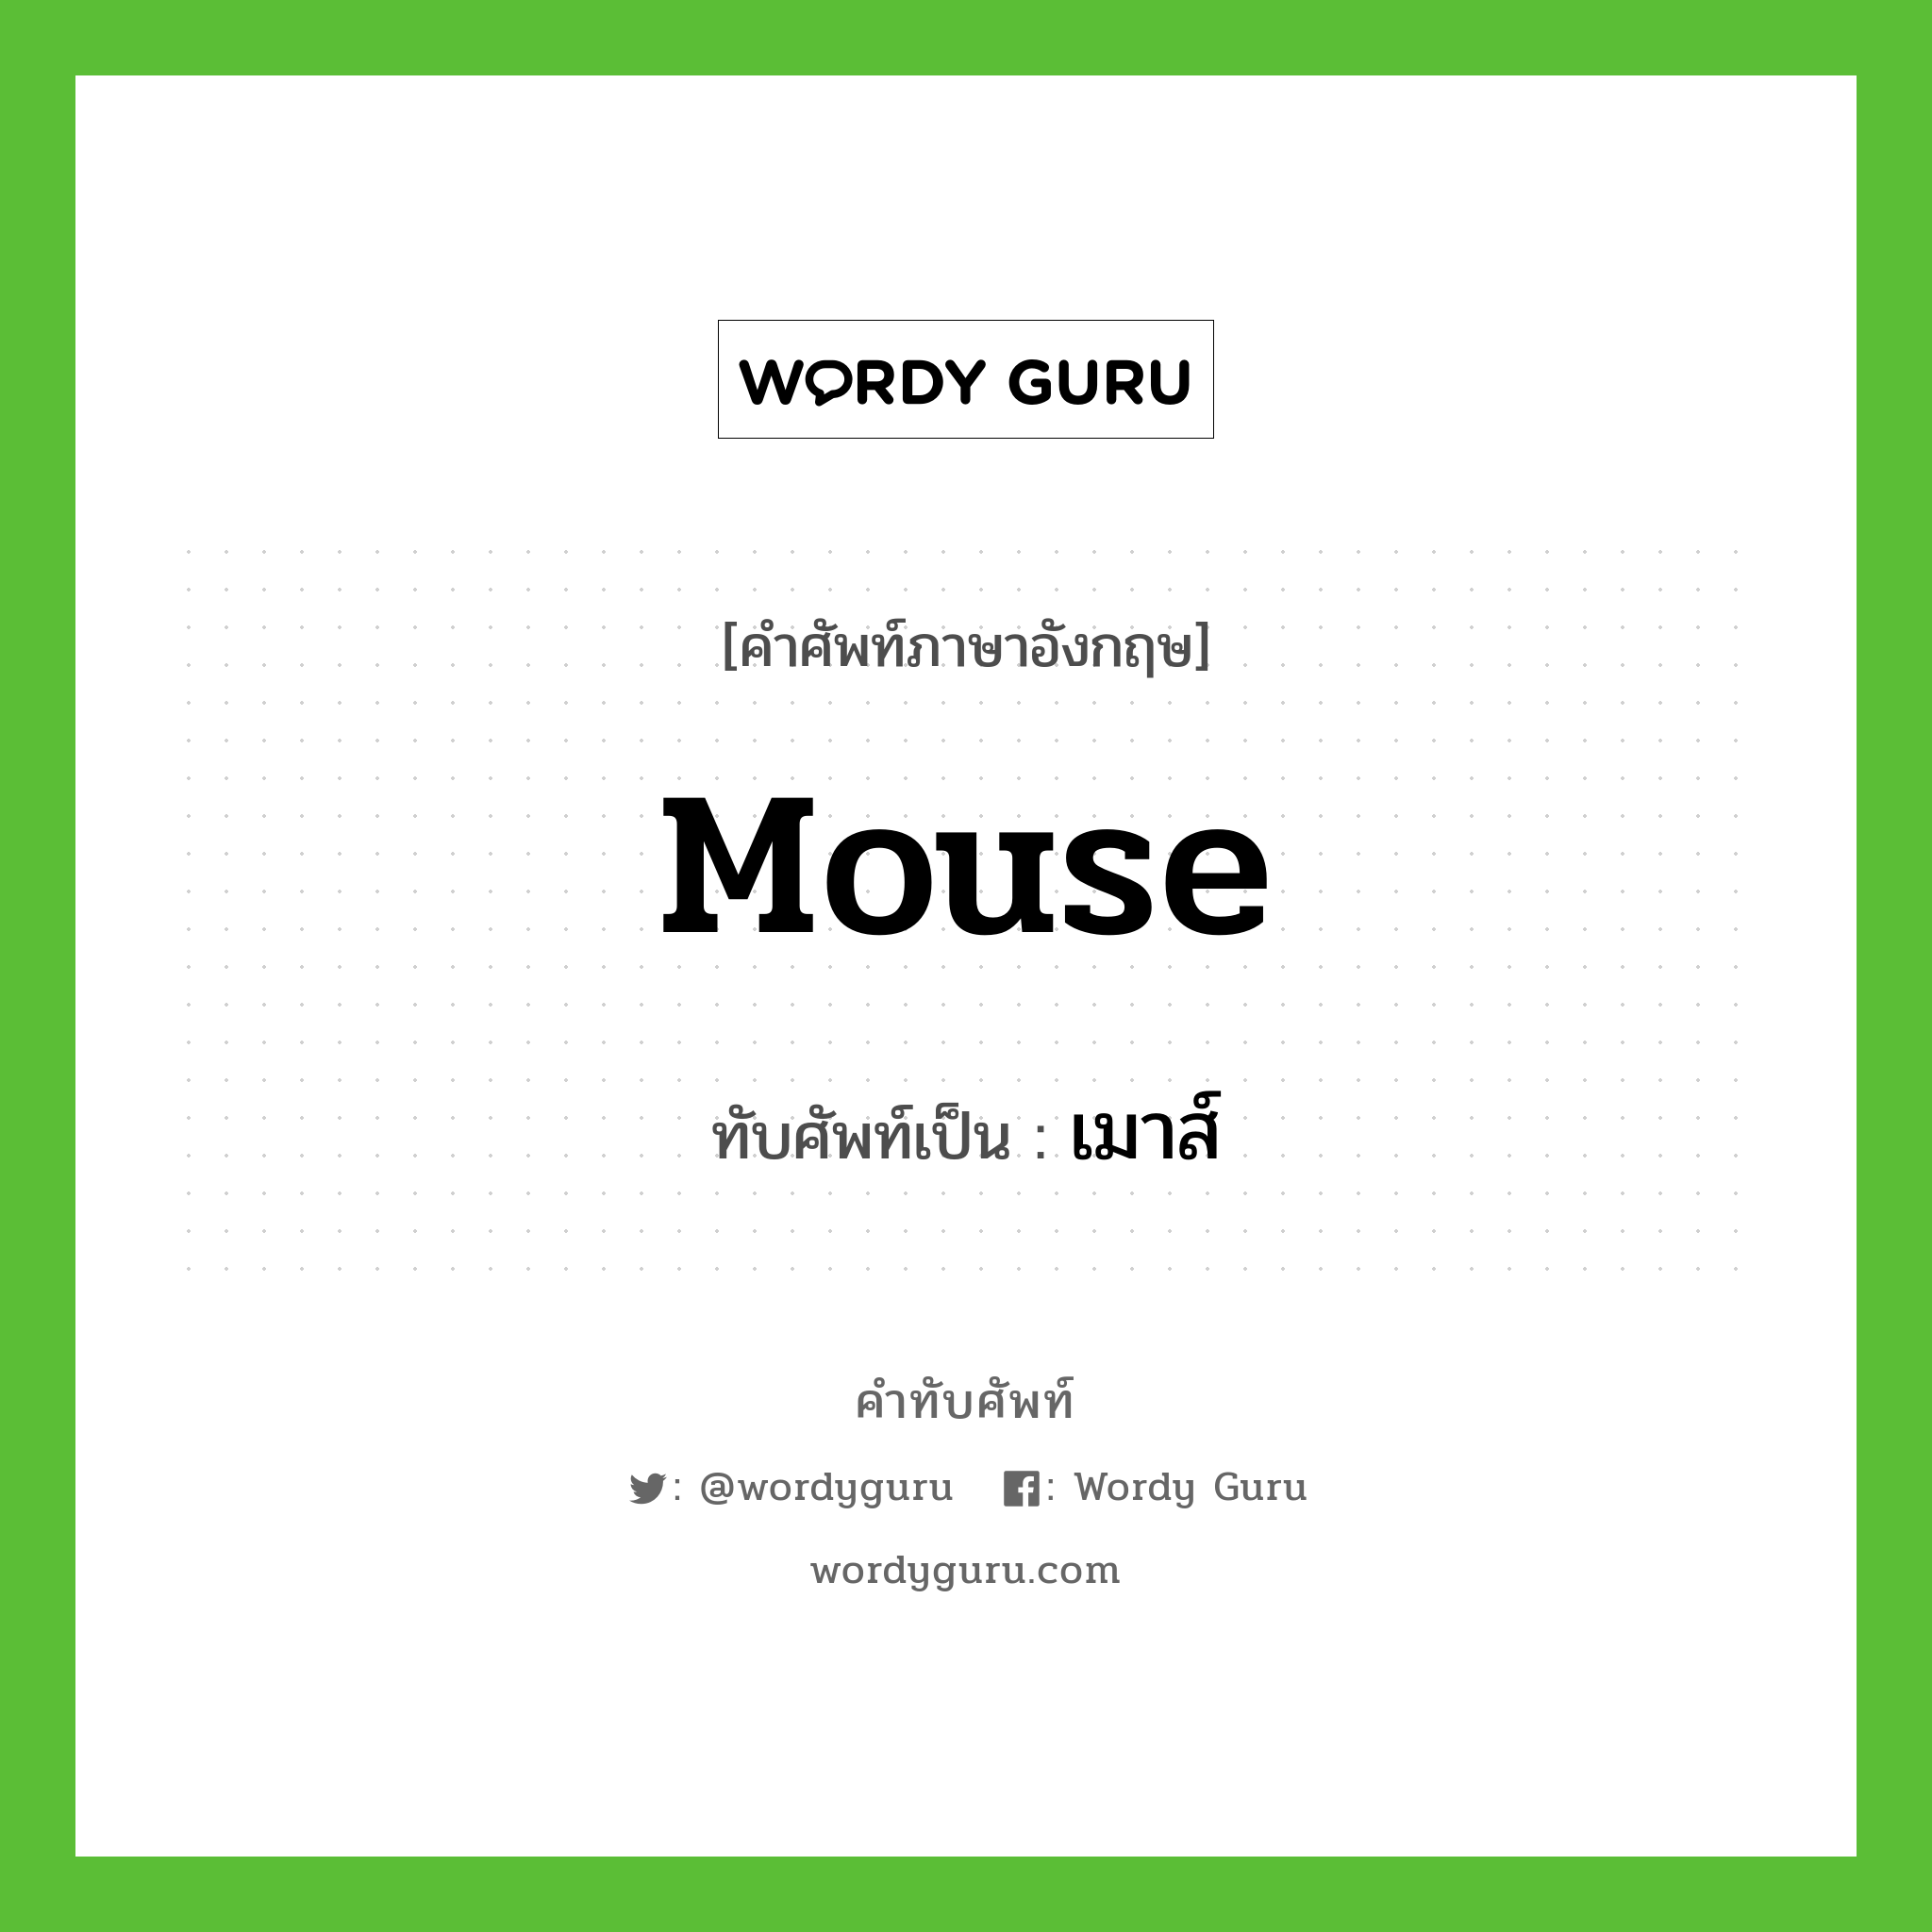 mouse เขียนเป็นคำไทยว่าอะไร?, คำศัพท์ภาษาอังกฤษ mouse ทับศัพท์เป็น เมาส์